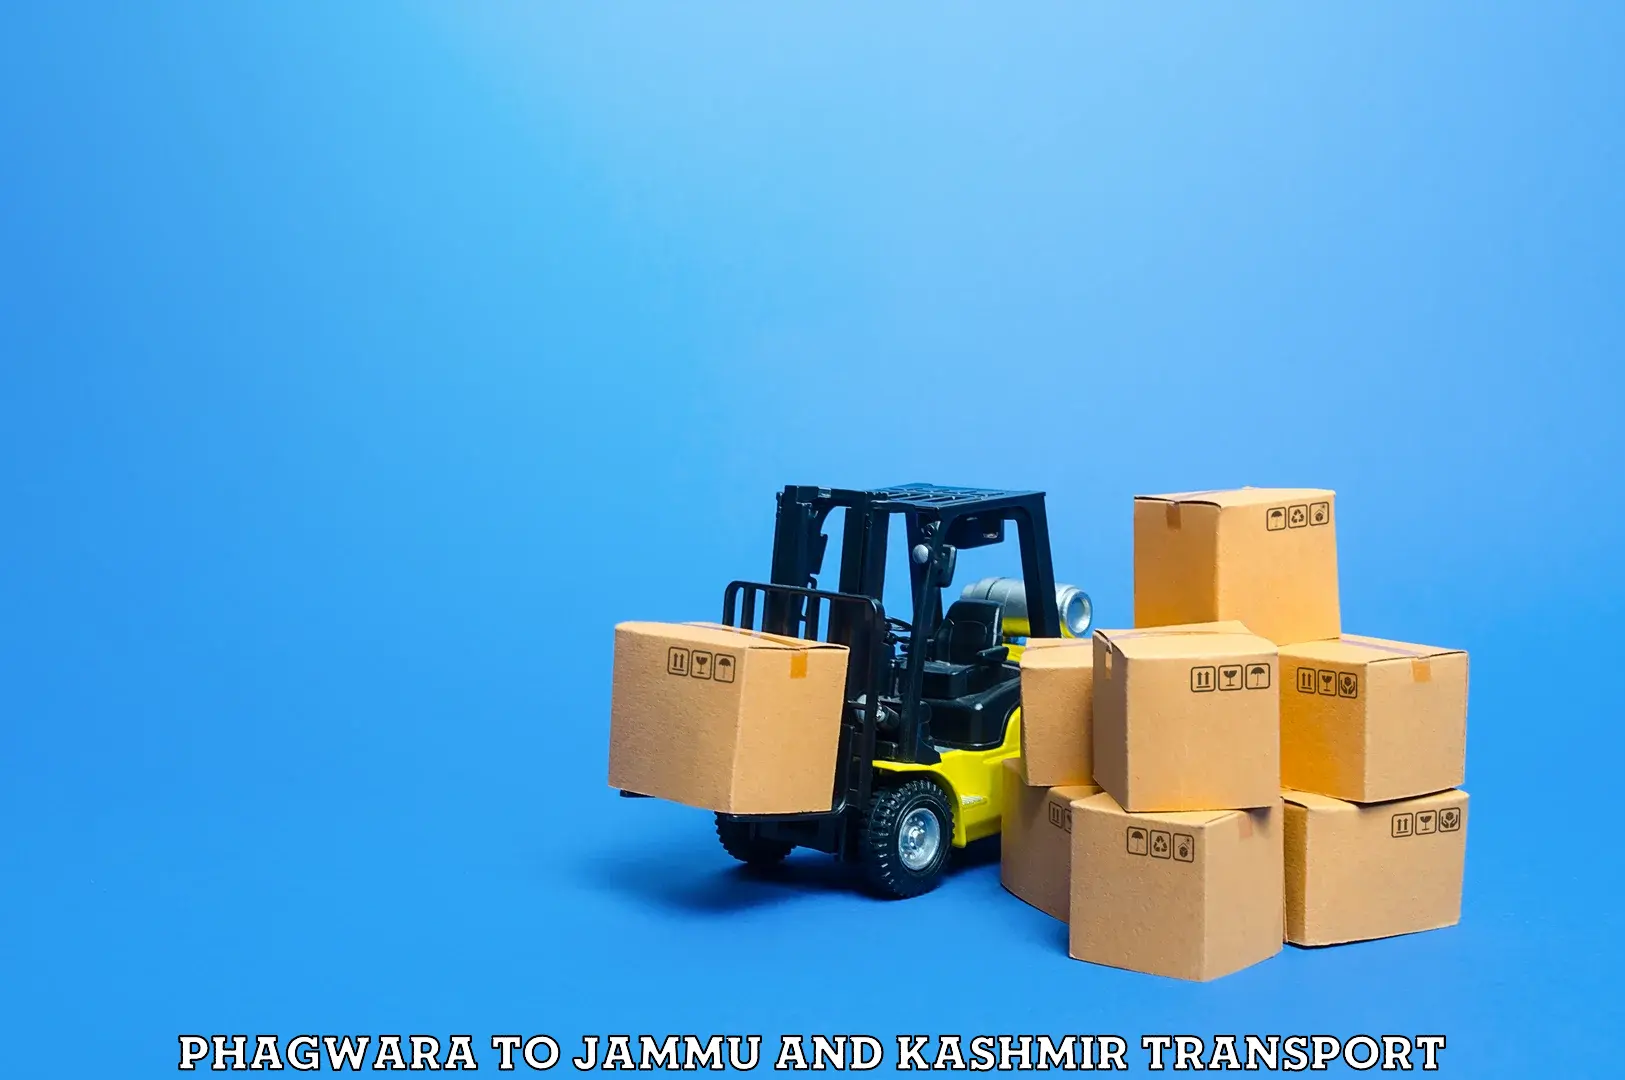 Bike shipping service Phagwara to Jammu and Kashmir